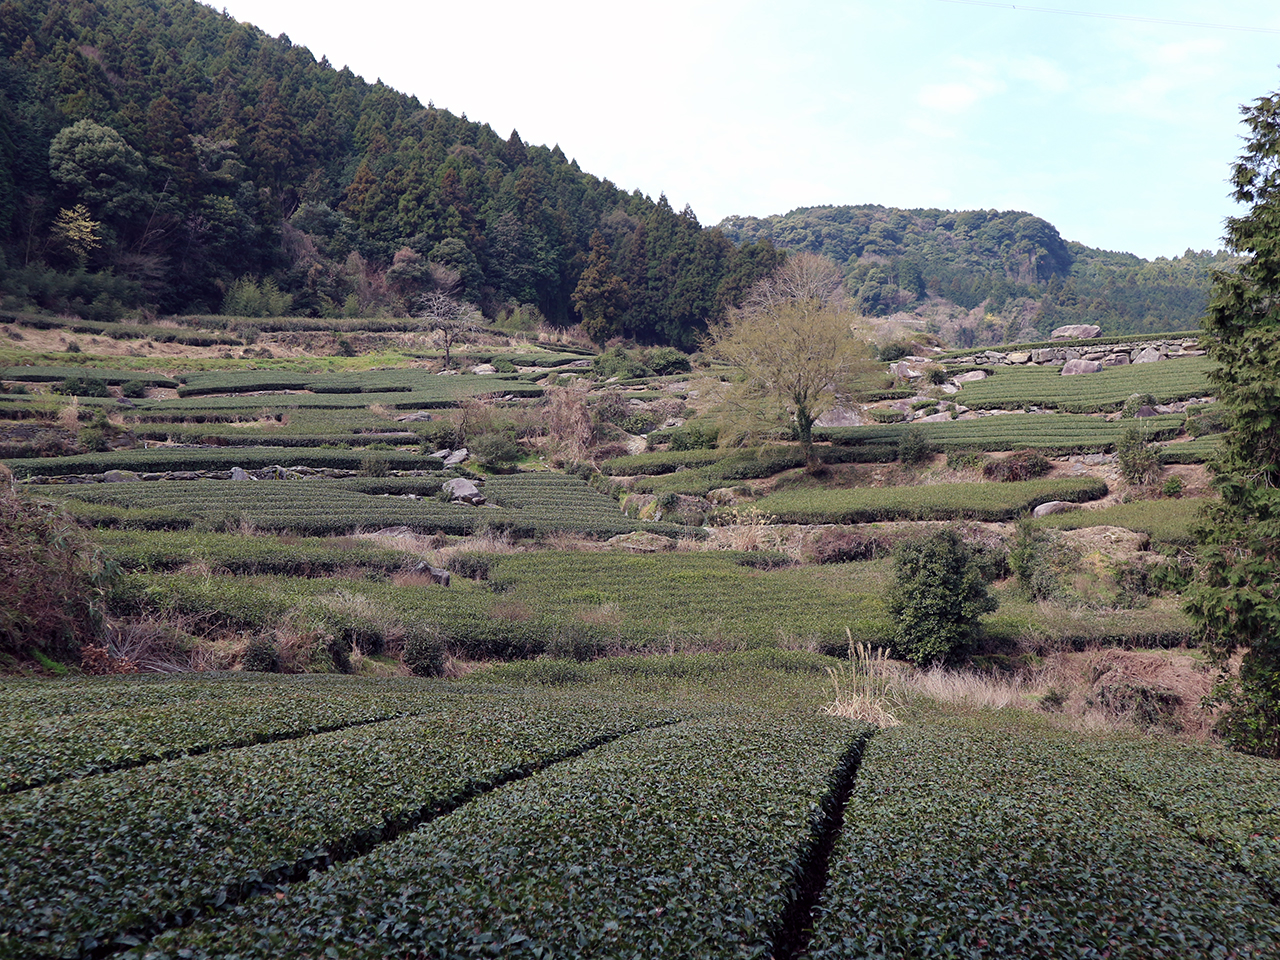 다랑이 논을 연상하게 하는 차밭. 우레시노는 일본에서도 유명한 차 생산지다.